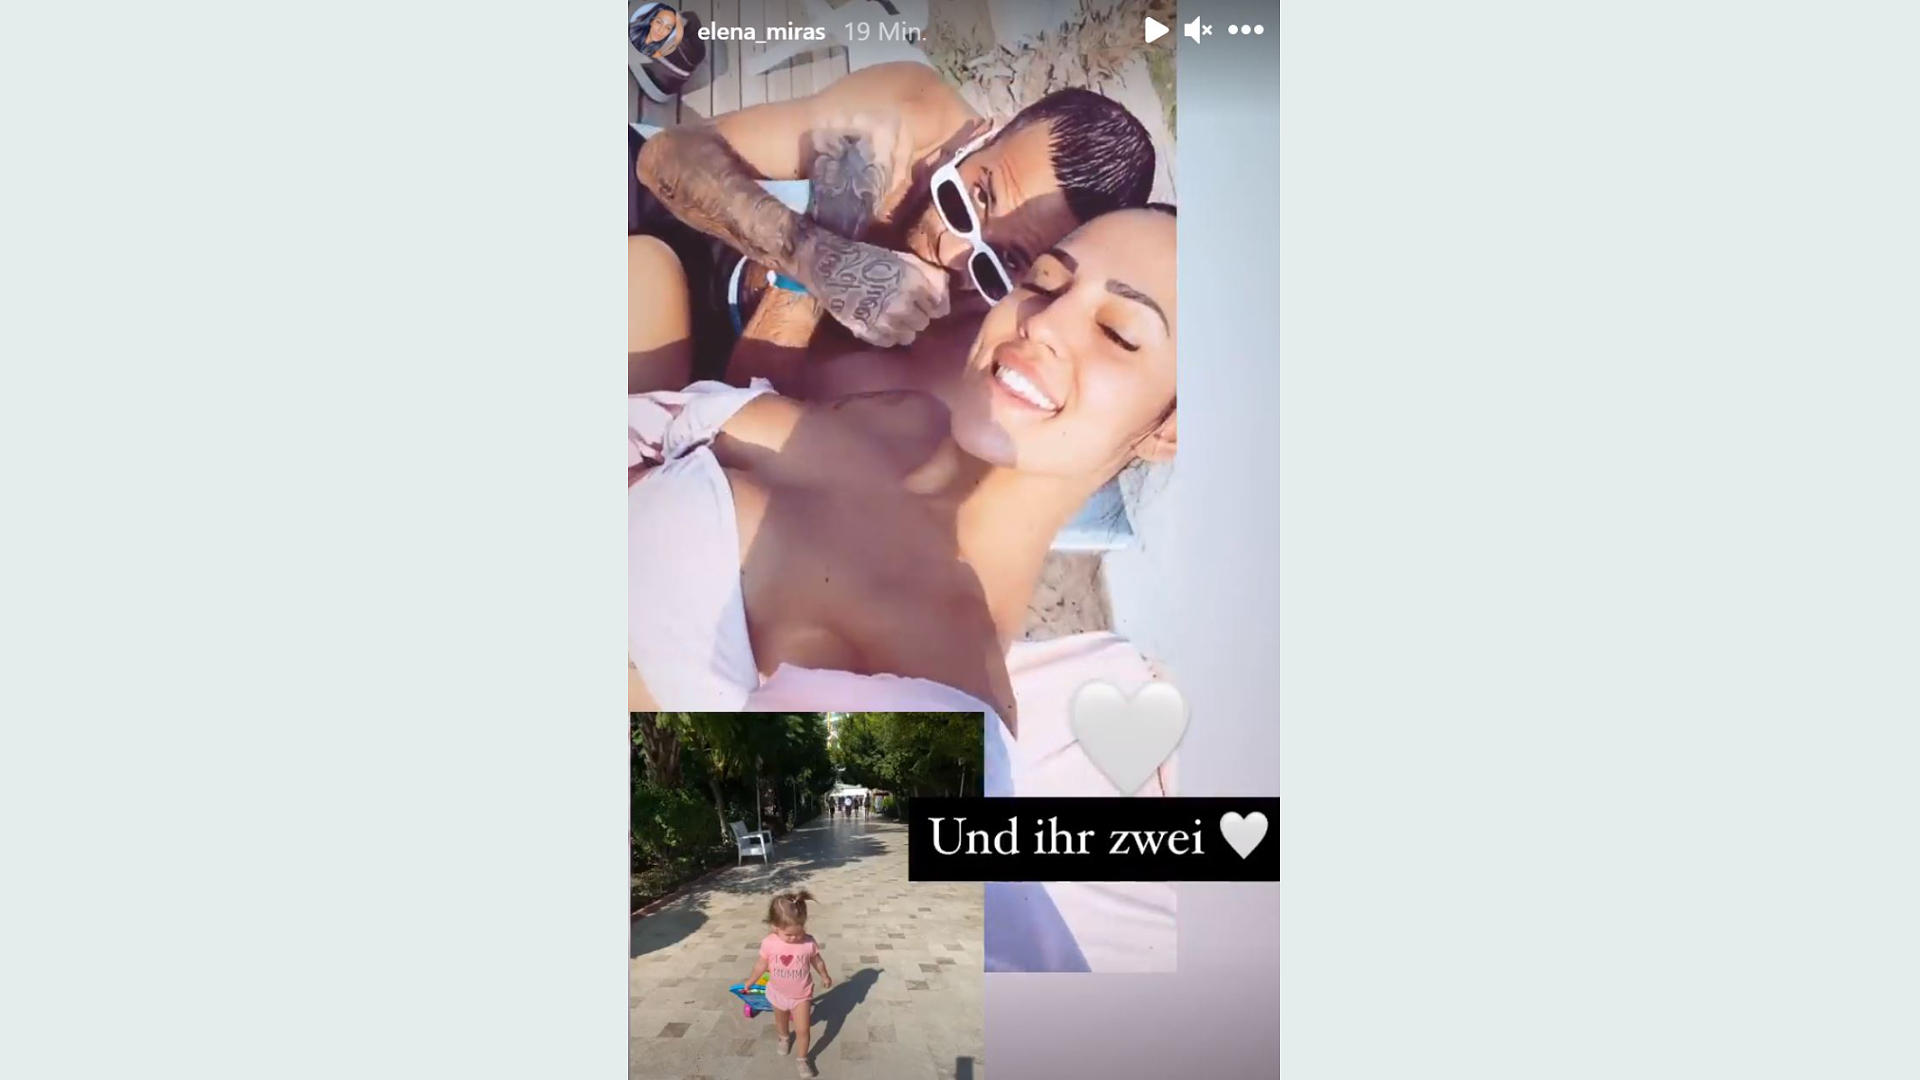 Elena Miras zeigt sich auf Instagram in den Armen eines unbekannten Mannes. 